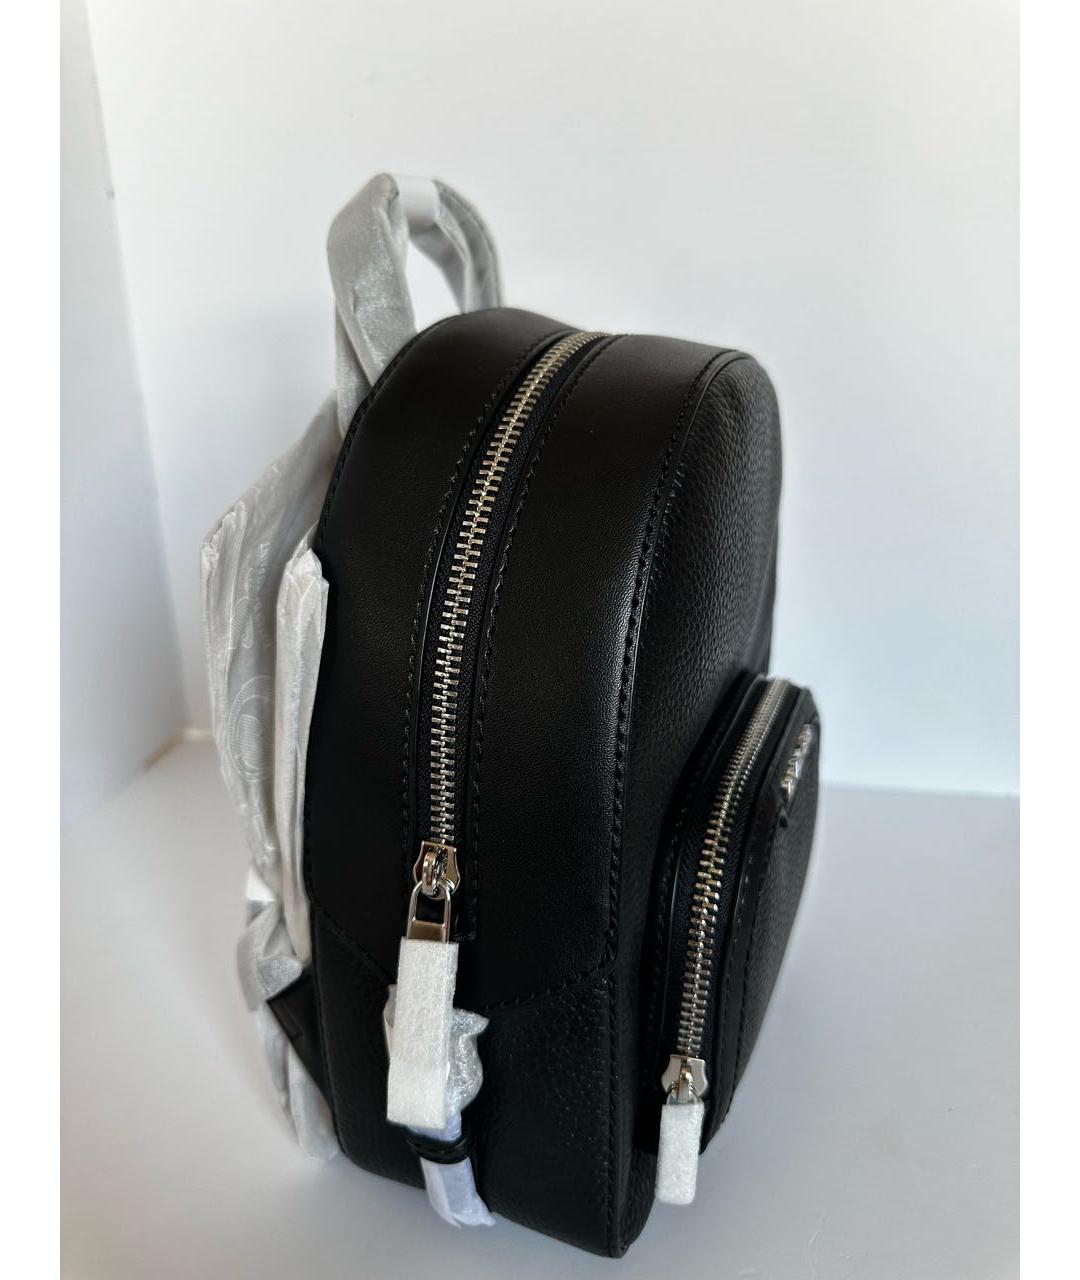 MICHAEL KORS Черный кожаный рюкзак, фото 2